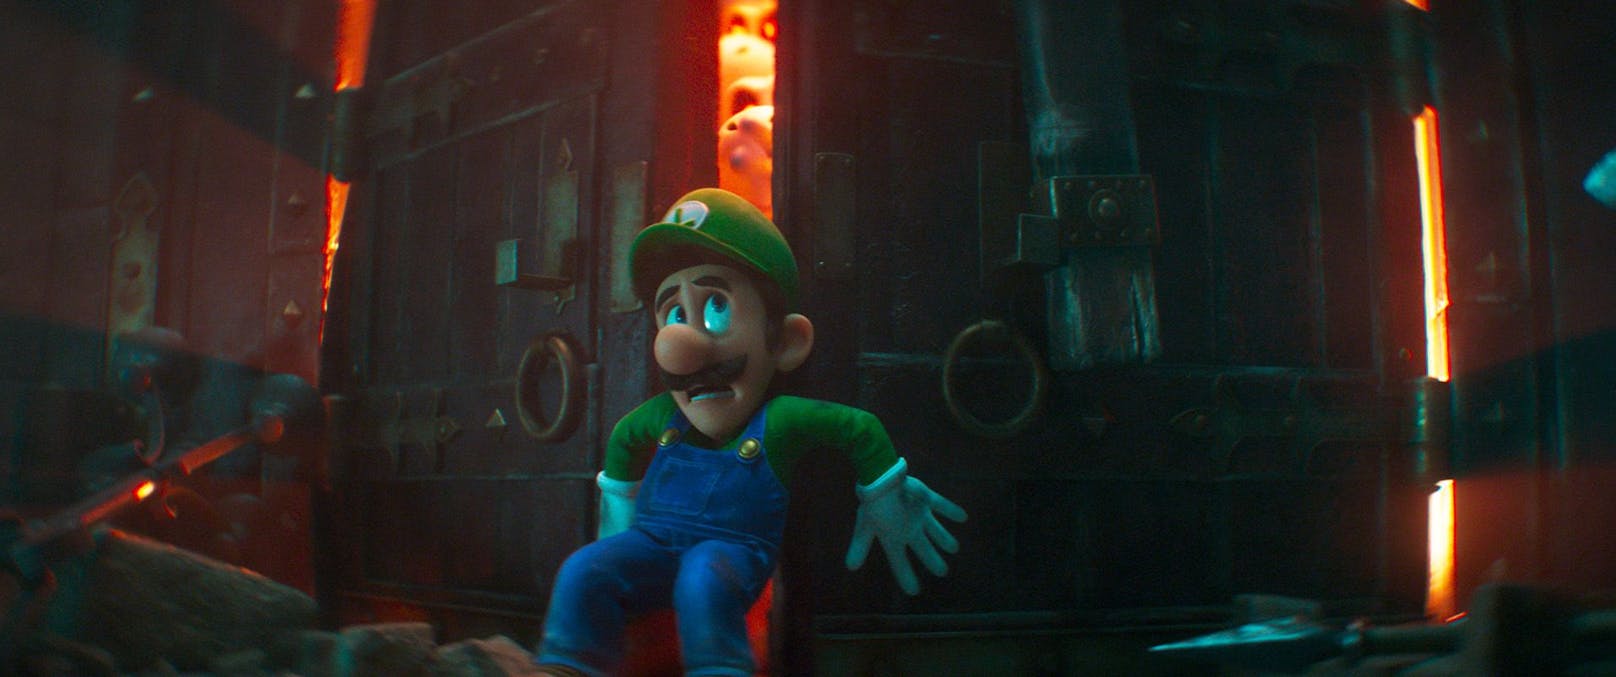 Durch unglückliche Zufälle landet Luigi in der düsteren Welt von Bowser.